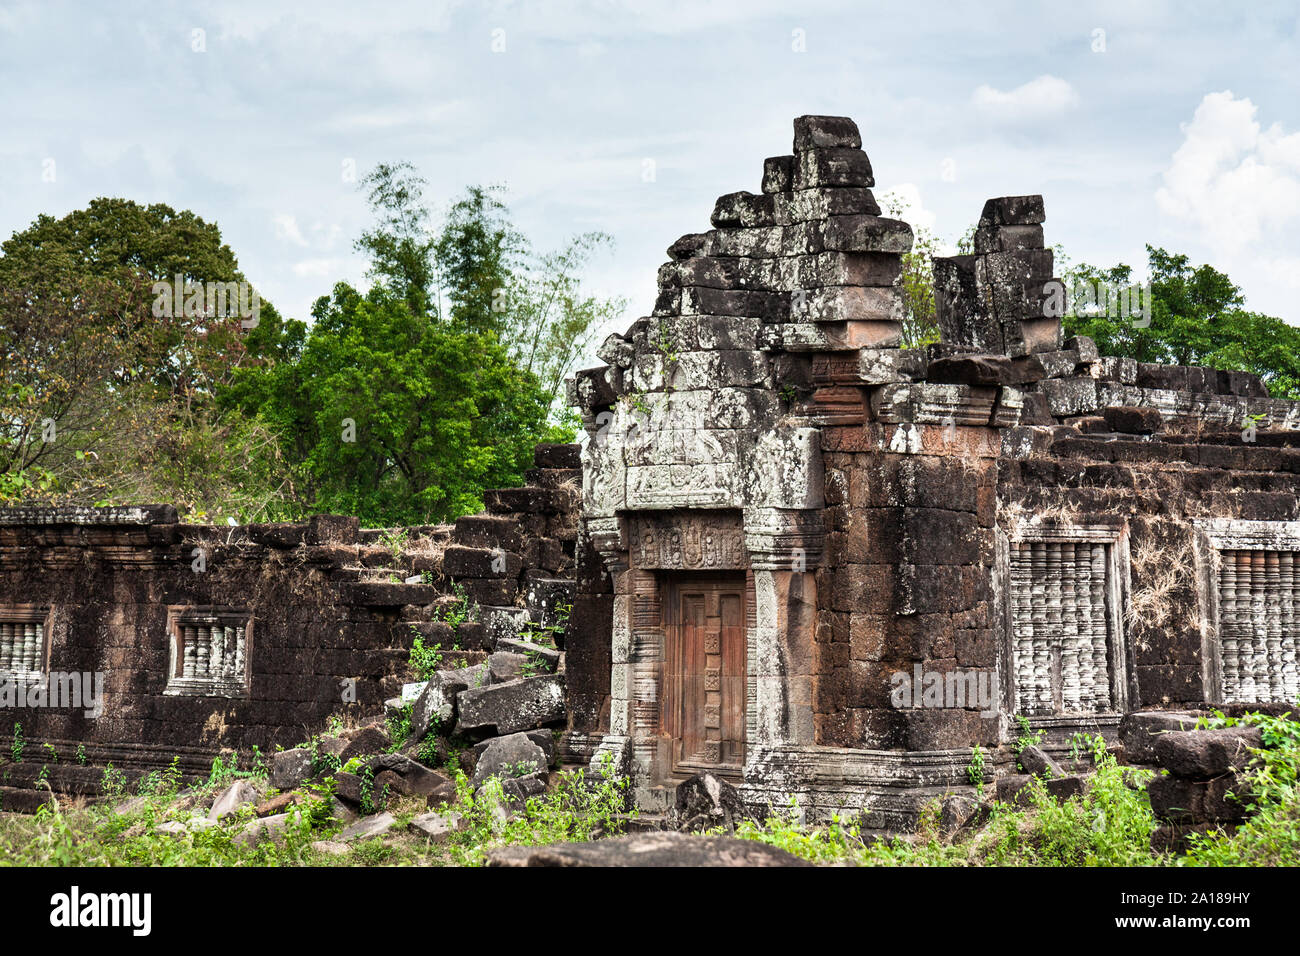 Au nord des fouilles en Wat Phu (Vat Phou), un pré-hindoue et bouddhiste Khmer Angkor temple dans la province de Champasak, près de Vientiane, Laos. Banque D'Images